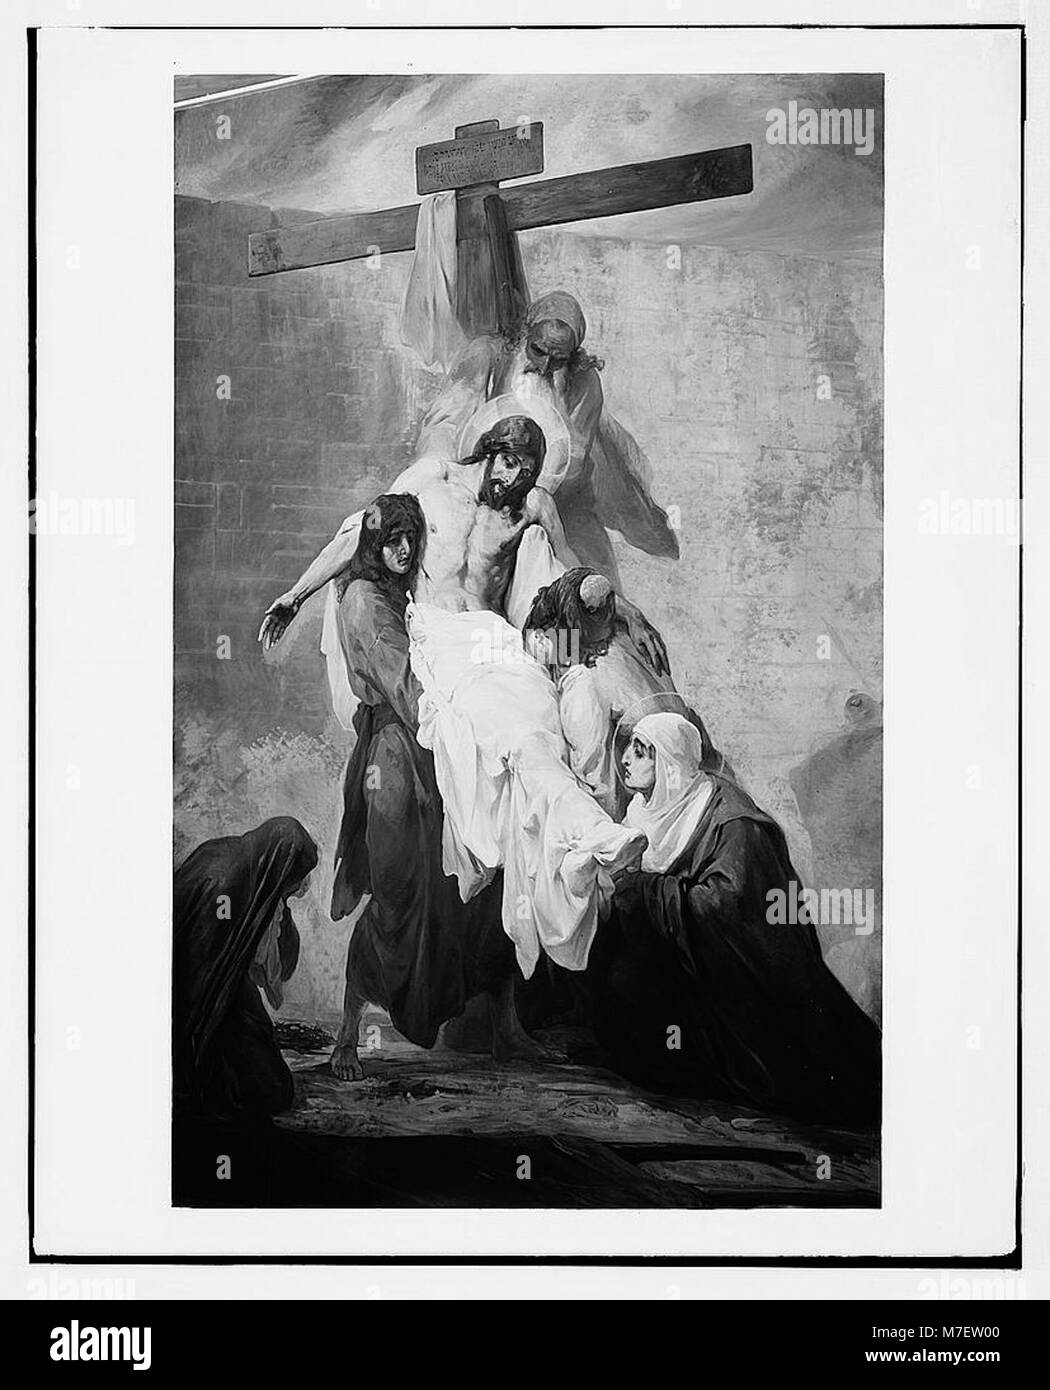 Einstellen von Bildern der Passion Christi, durch Kosheleff, in Russischen Hospiz, Jerusalem. Der Leib Christi vom Kreuz genommen. LOC 07308 matpc. Stockfoto